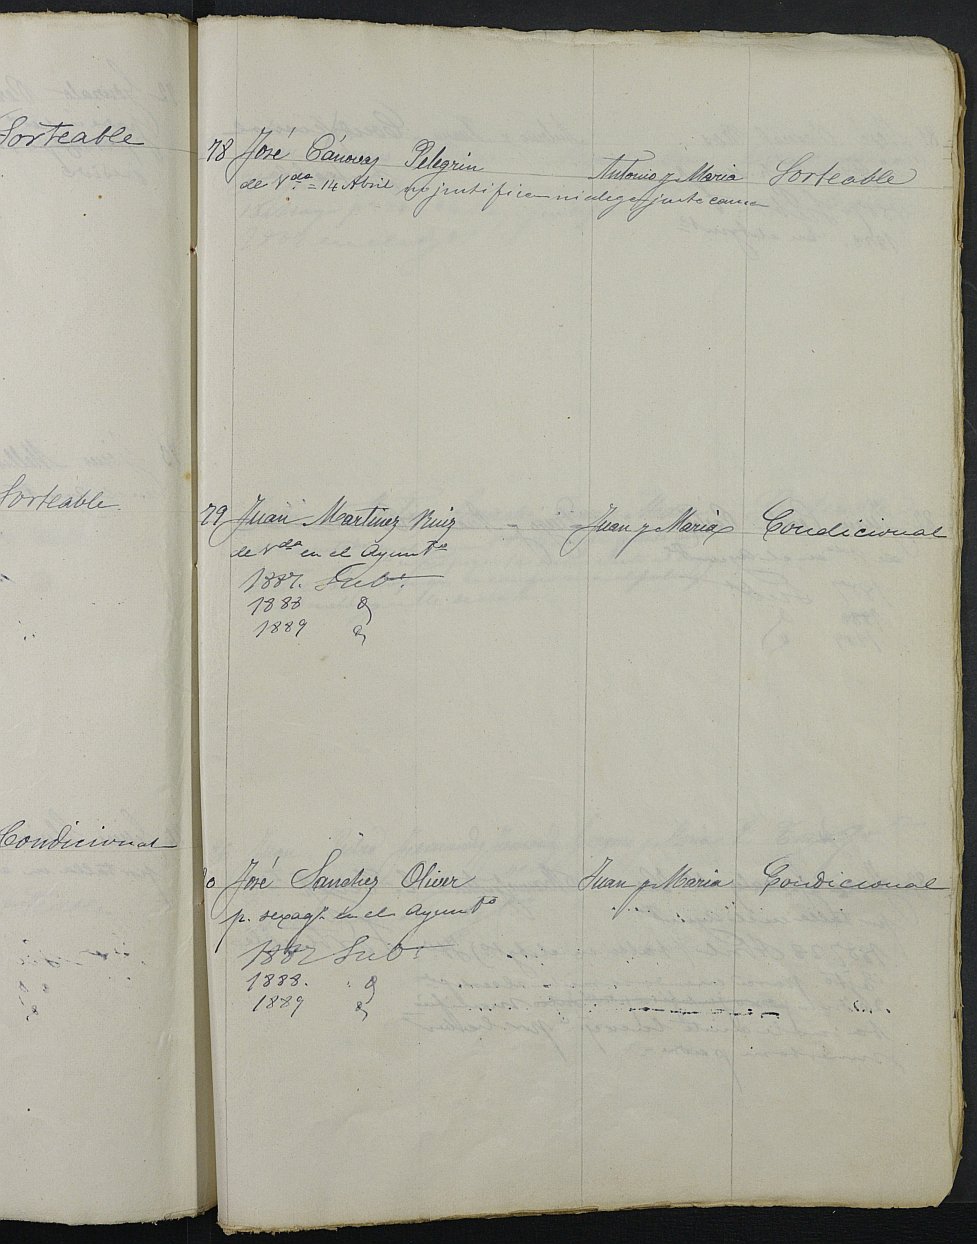 Relación de individuos declarados soldados e ingresados en Caja de la Sección 4ª del Ayuntamiento de Lorca de 1886.